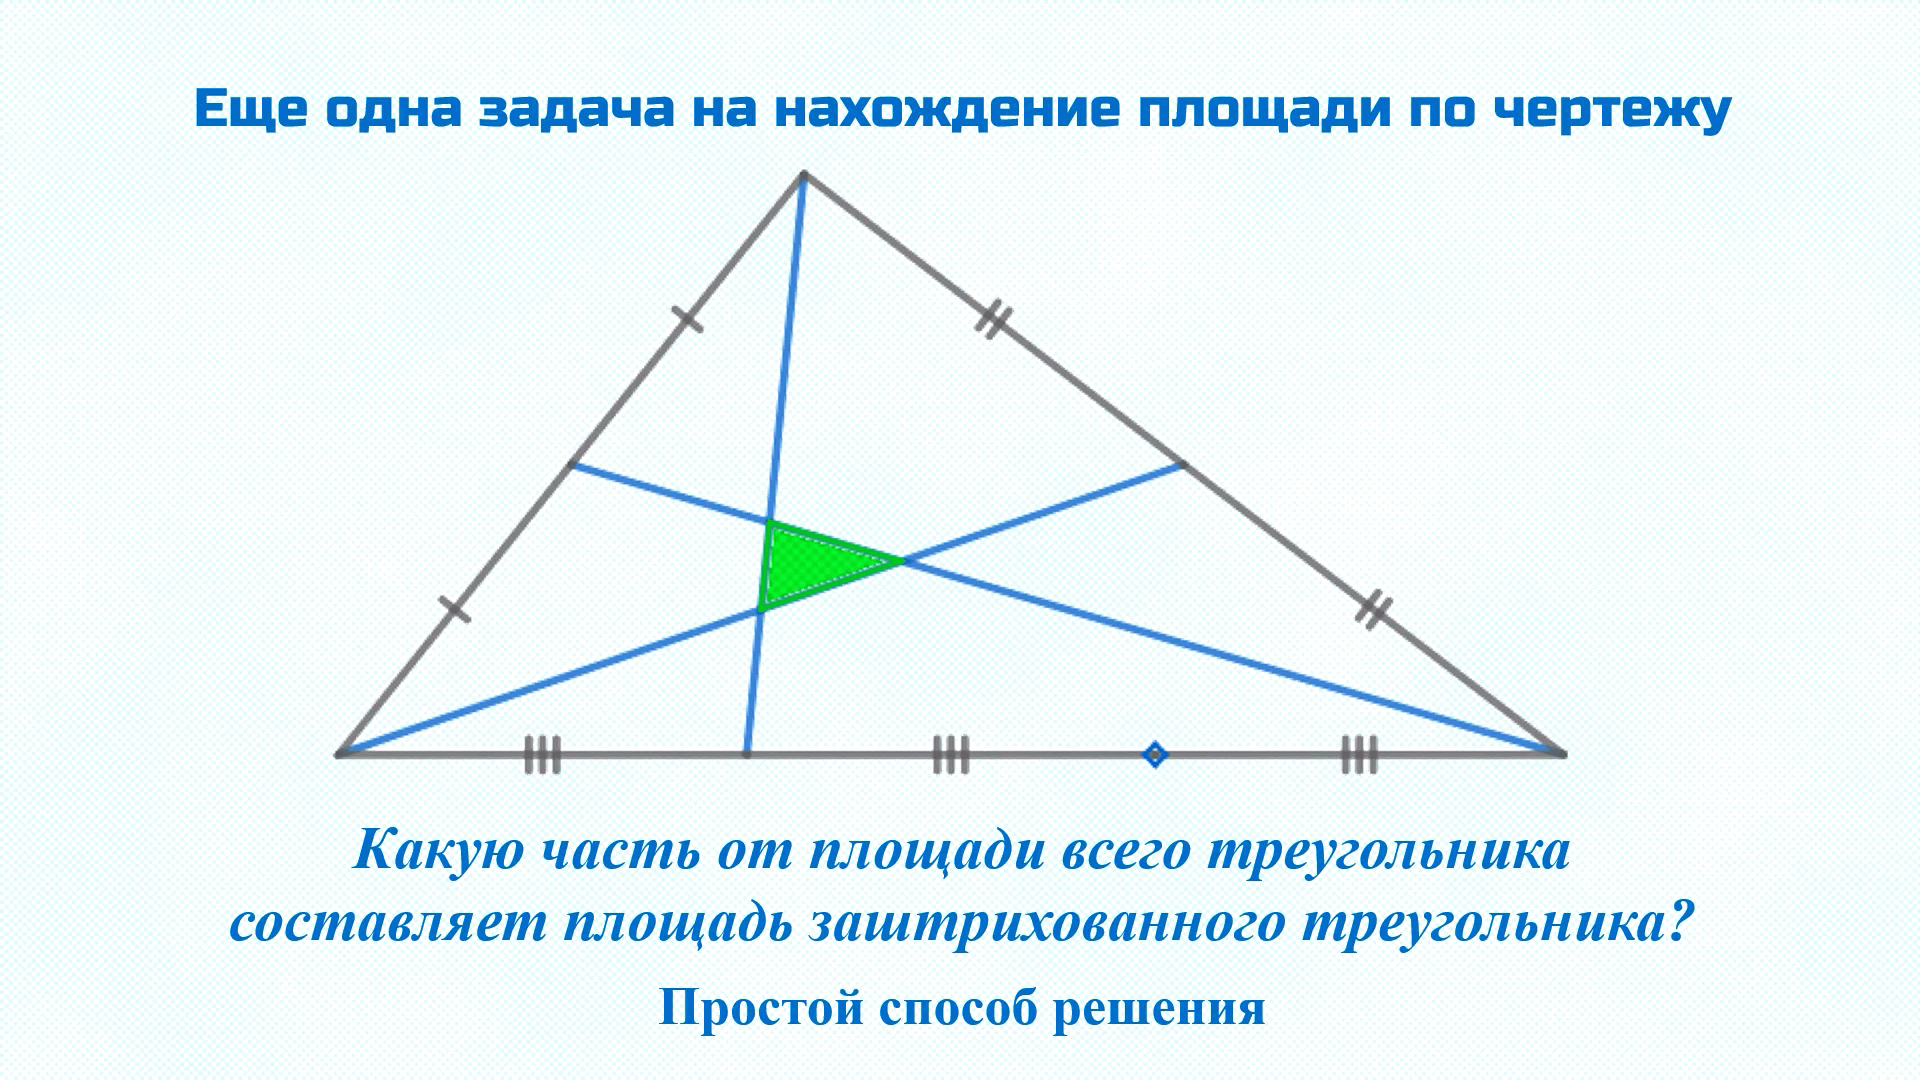 Тангенс тупоугольного треугольника. Равносторонний тупоугольный треугольник. Медиана тупоугольного треугольника. Биссектриса тупоугольного треугольника. Площадь тупоугольного треугольника.